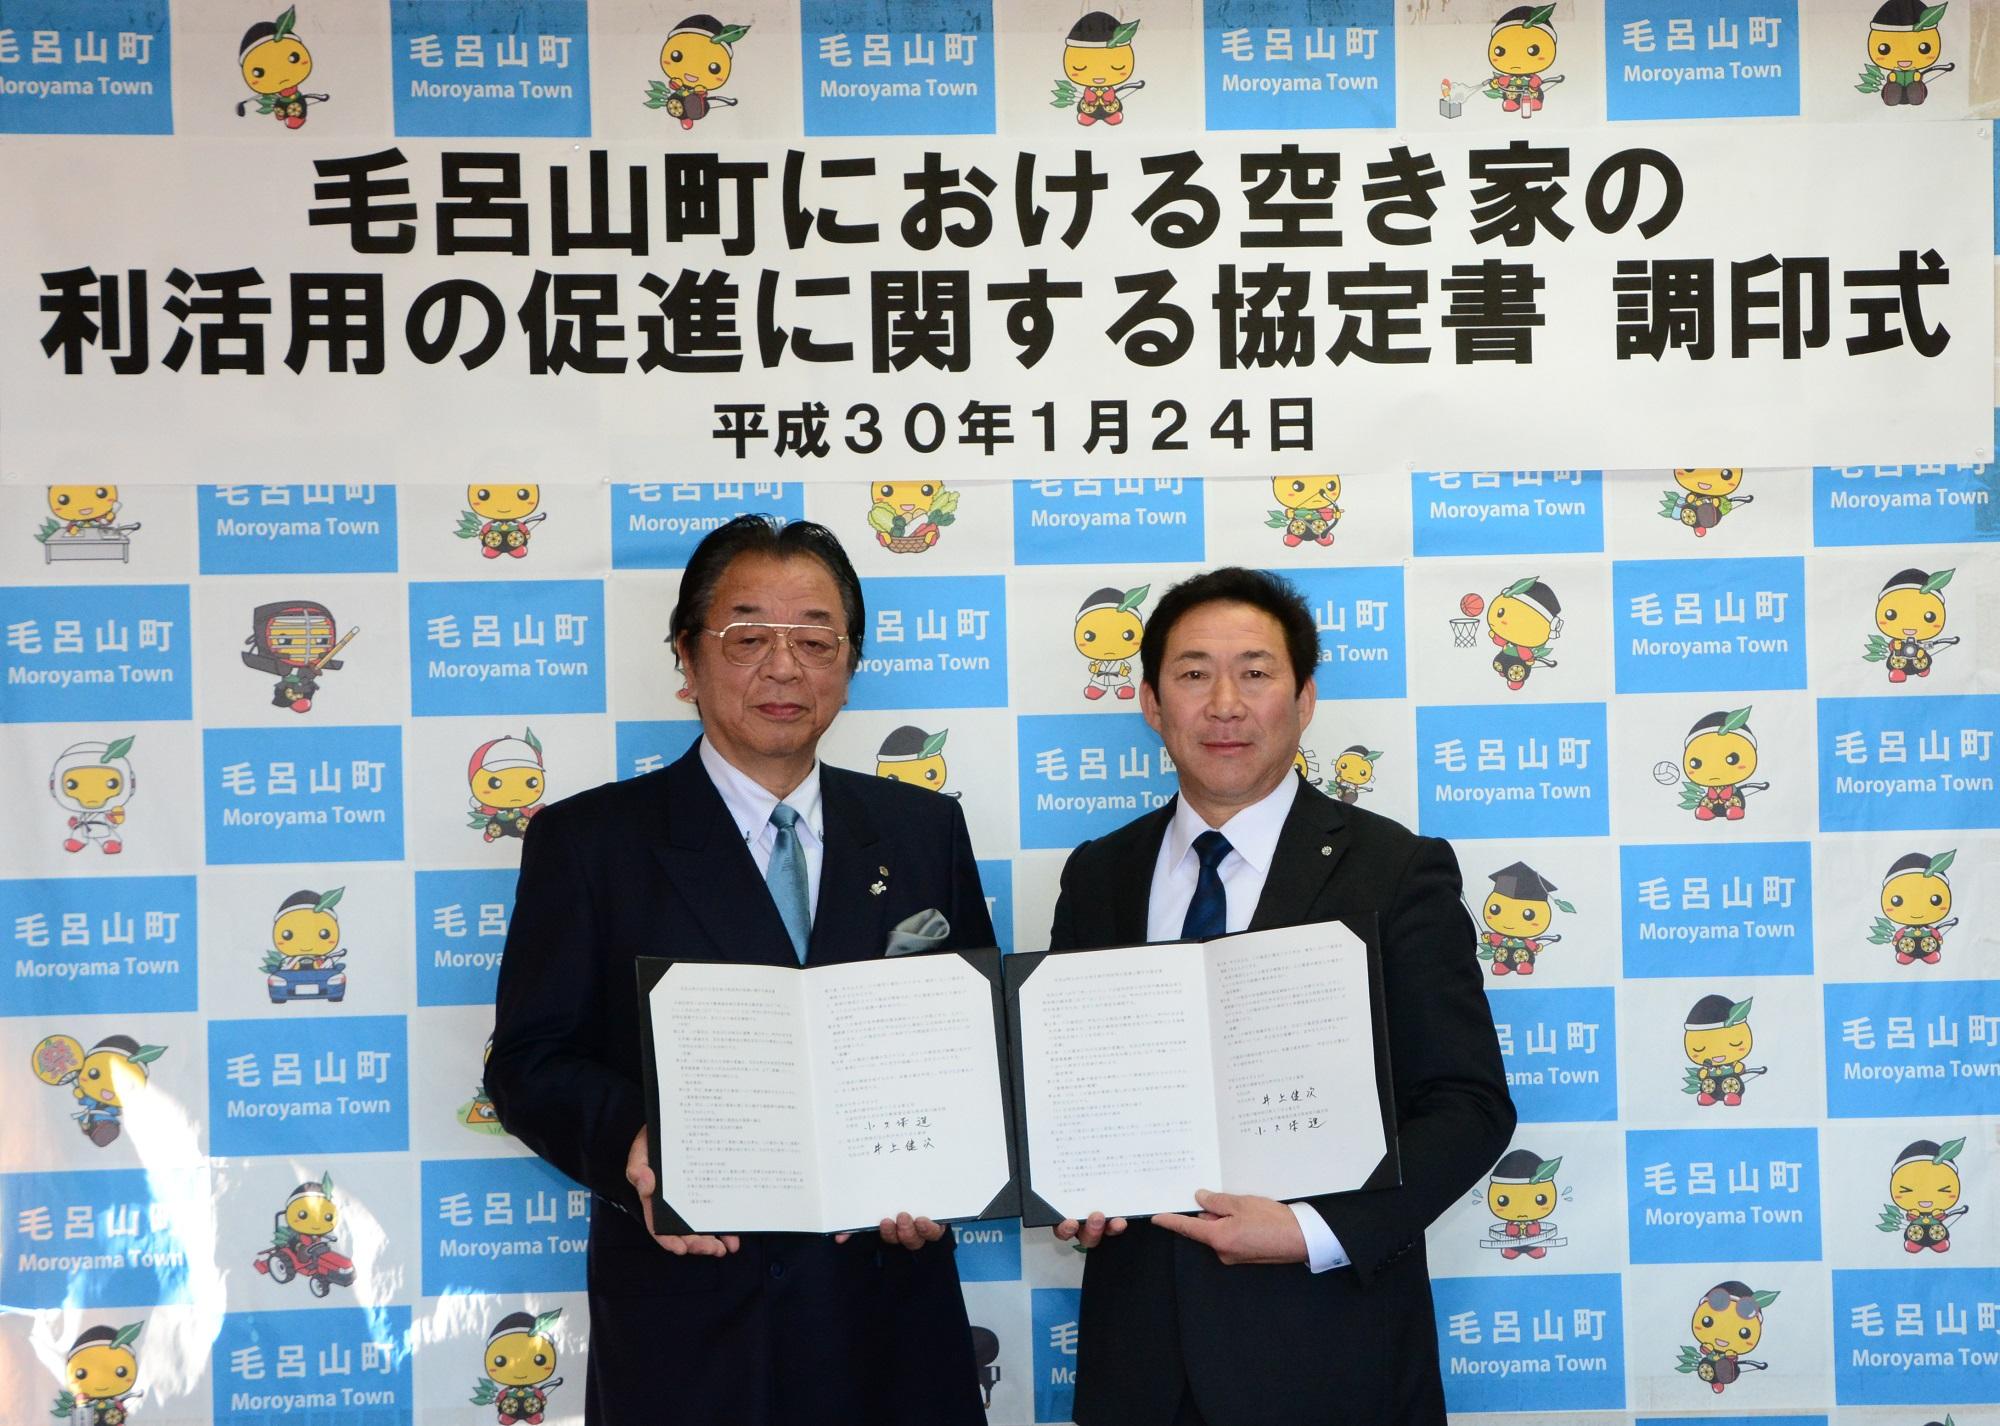 全日本不動産協会川越支部の方と町長が協定書をそれぞれ開いて持ち、並んで記念撮影をしている写真